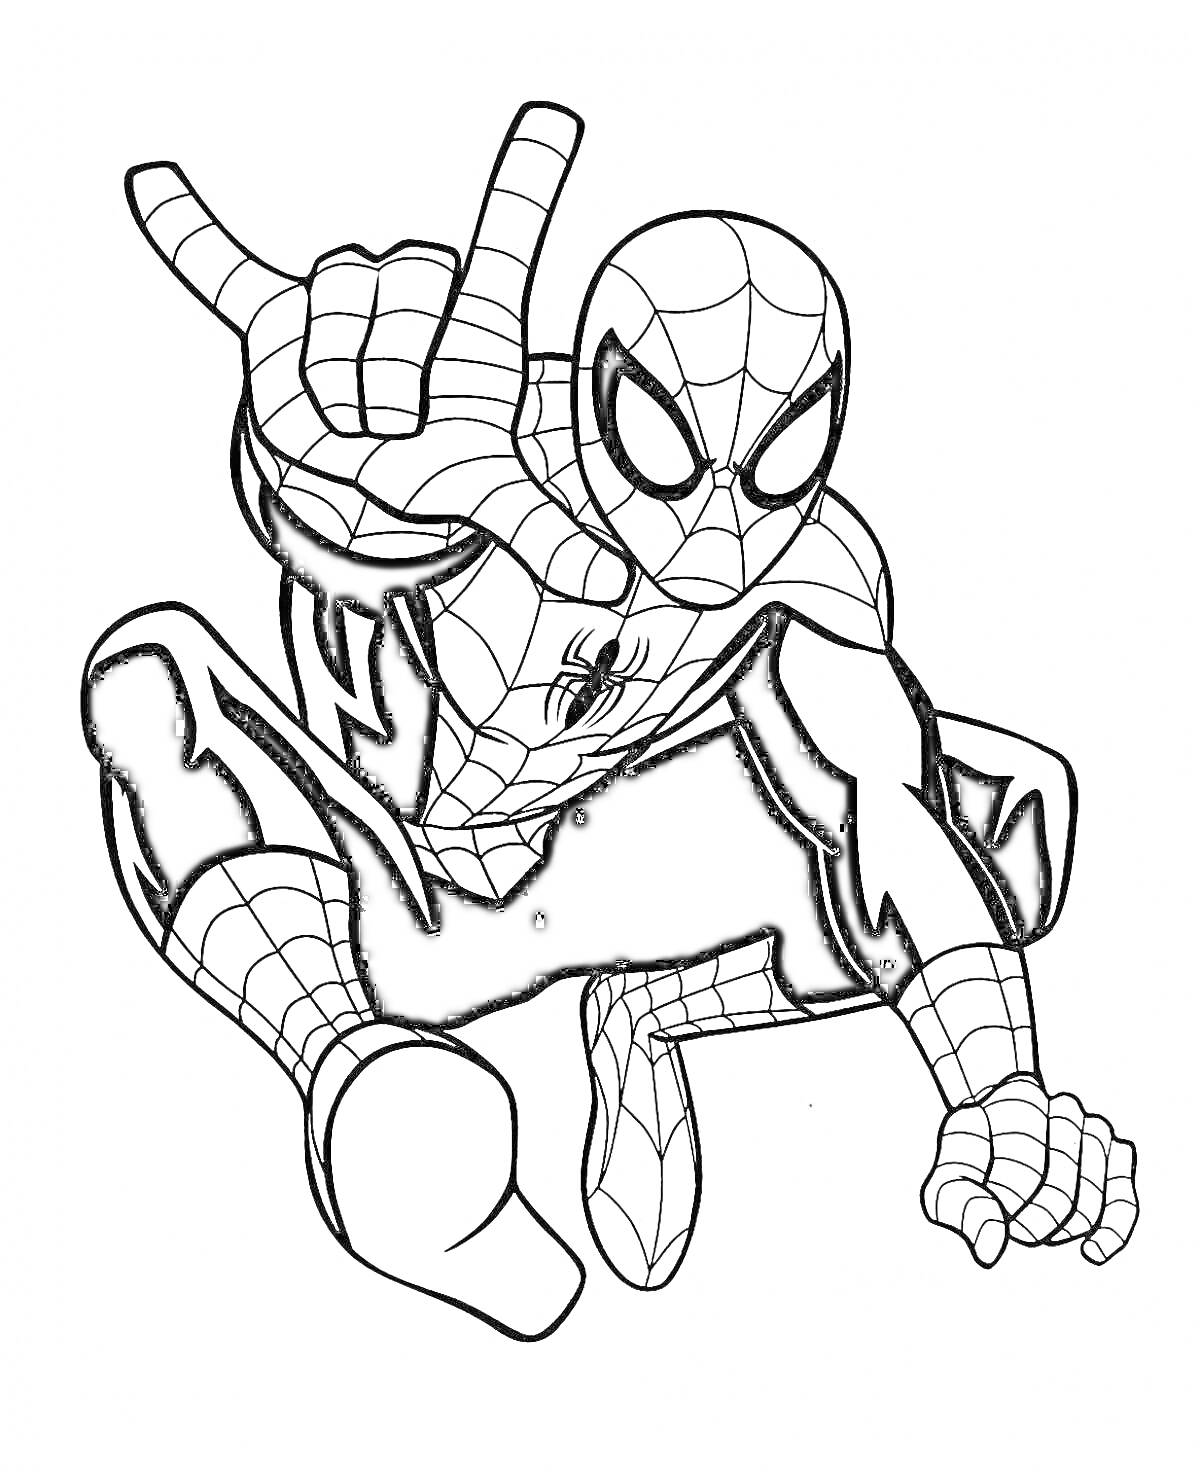 Раскраска Человек-паук в костюме, выполняющий жест рукой, сидя на корточках